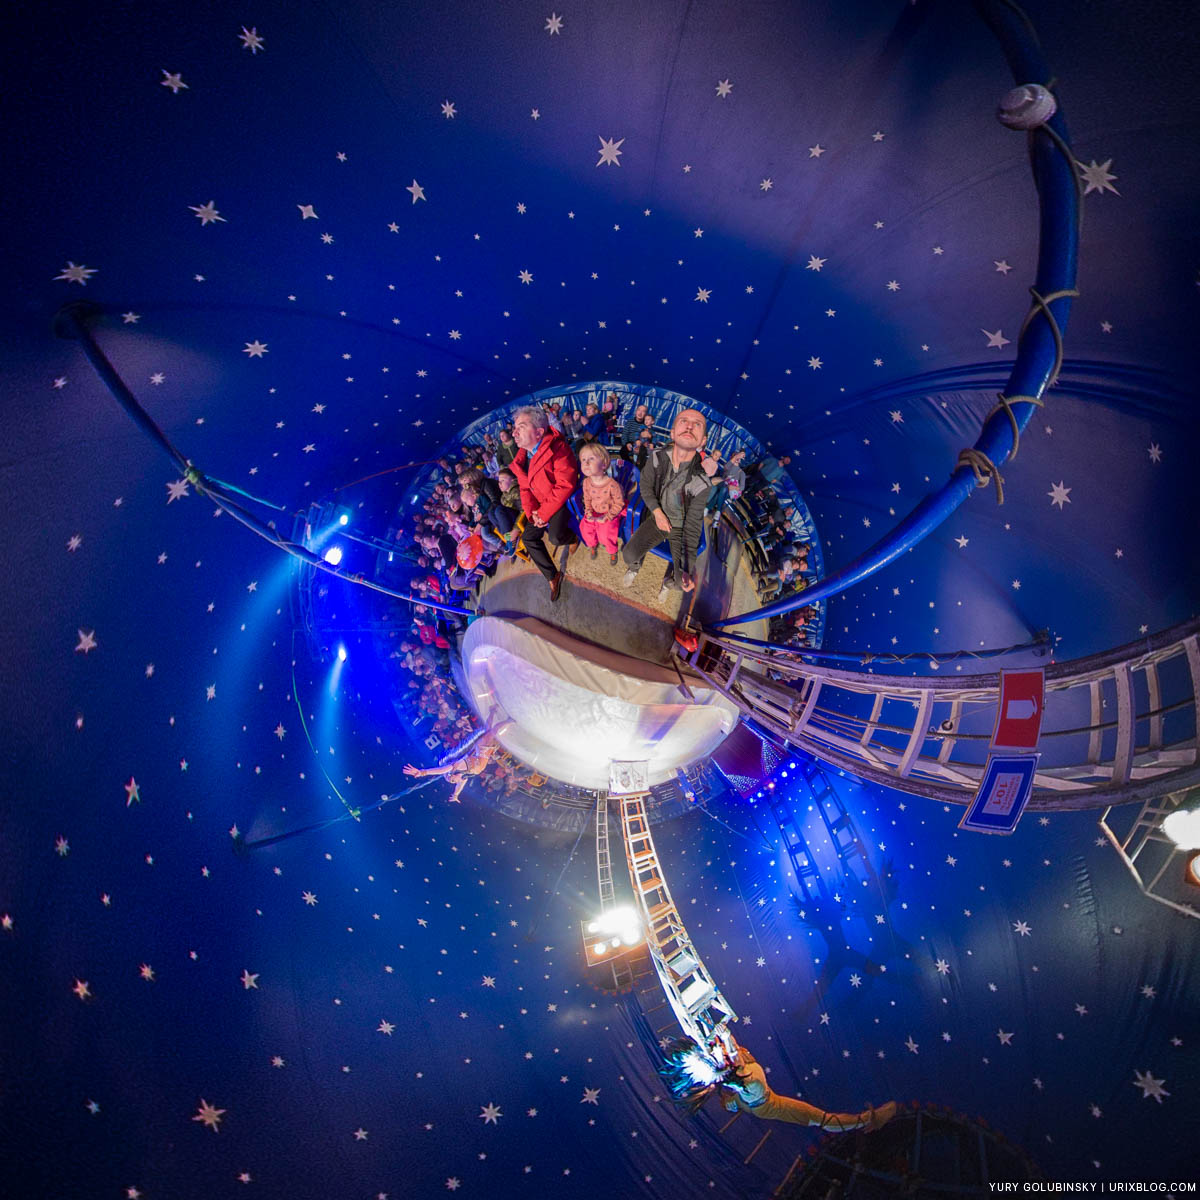 Цирк, шапито, маленькая планета, Пушкино, Московская область, Россия, панорама, Insta360 One X